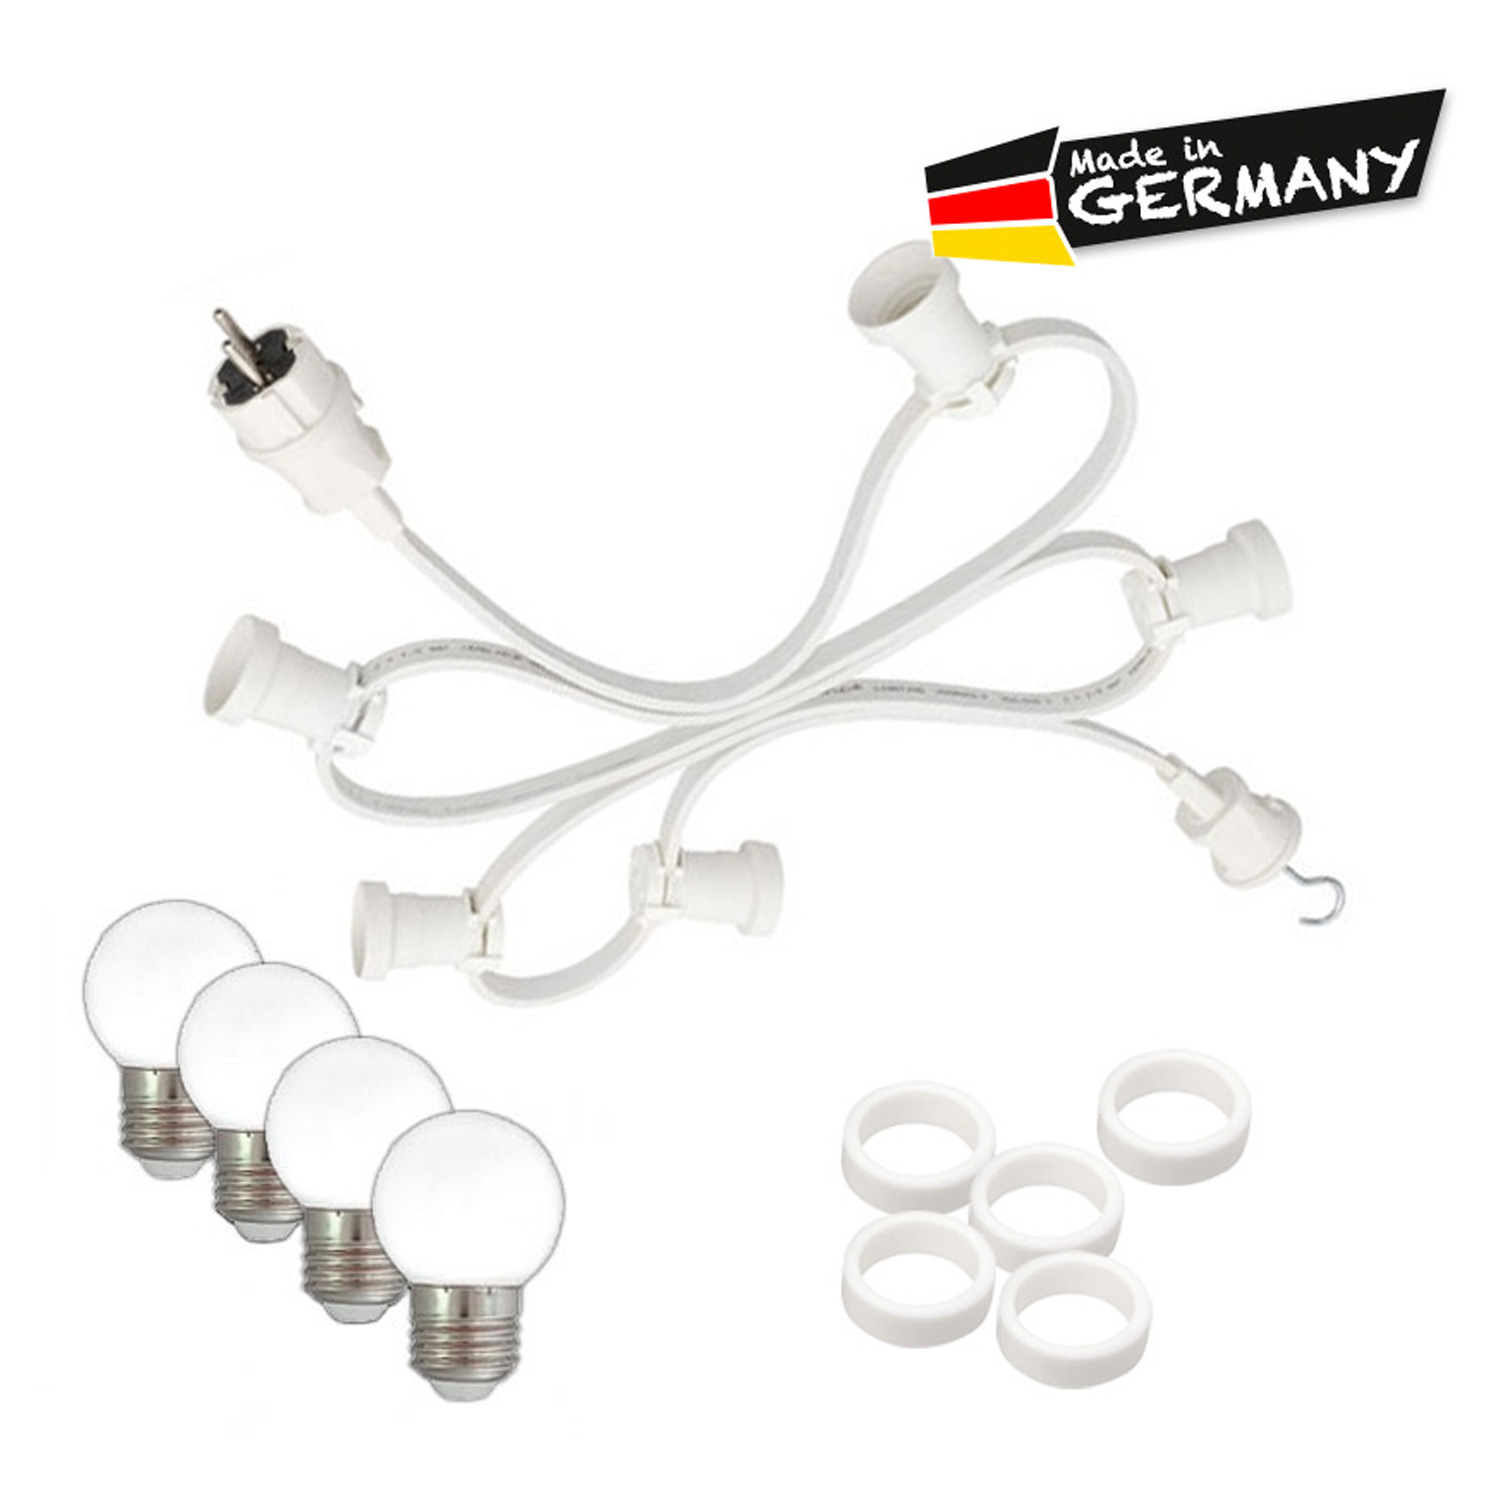 Illu-/Partylichterkette 20m - Außenlichterkette - Made in Germany - 30 x warmweiße LED Kugellampen